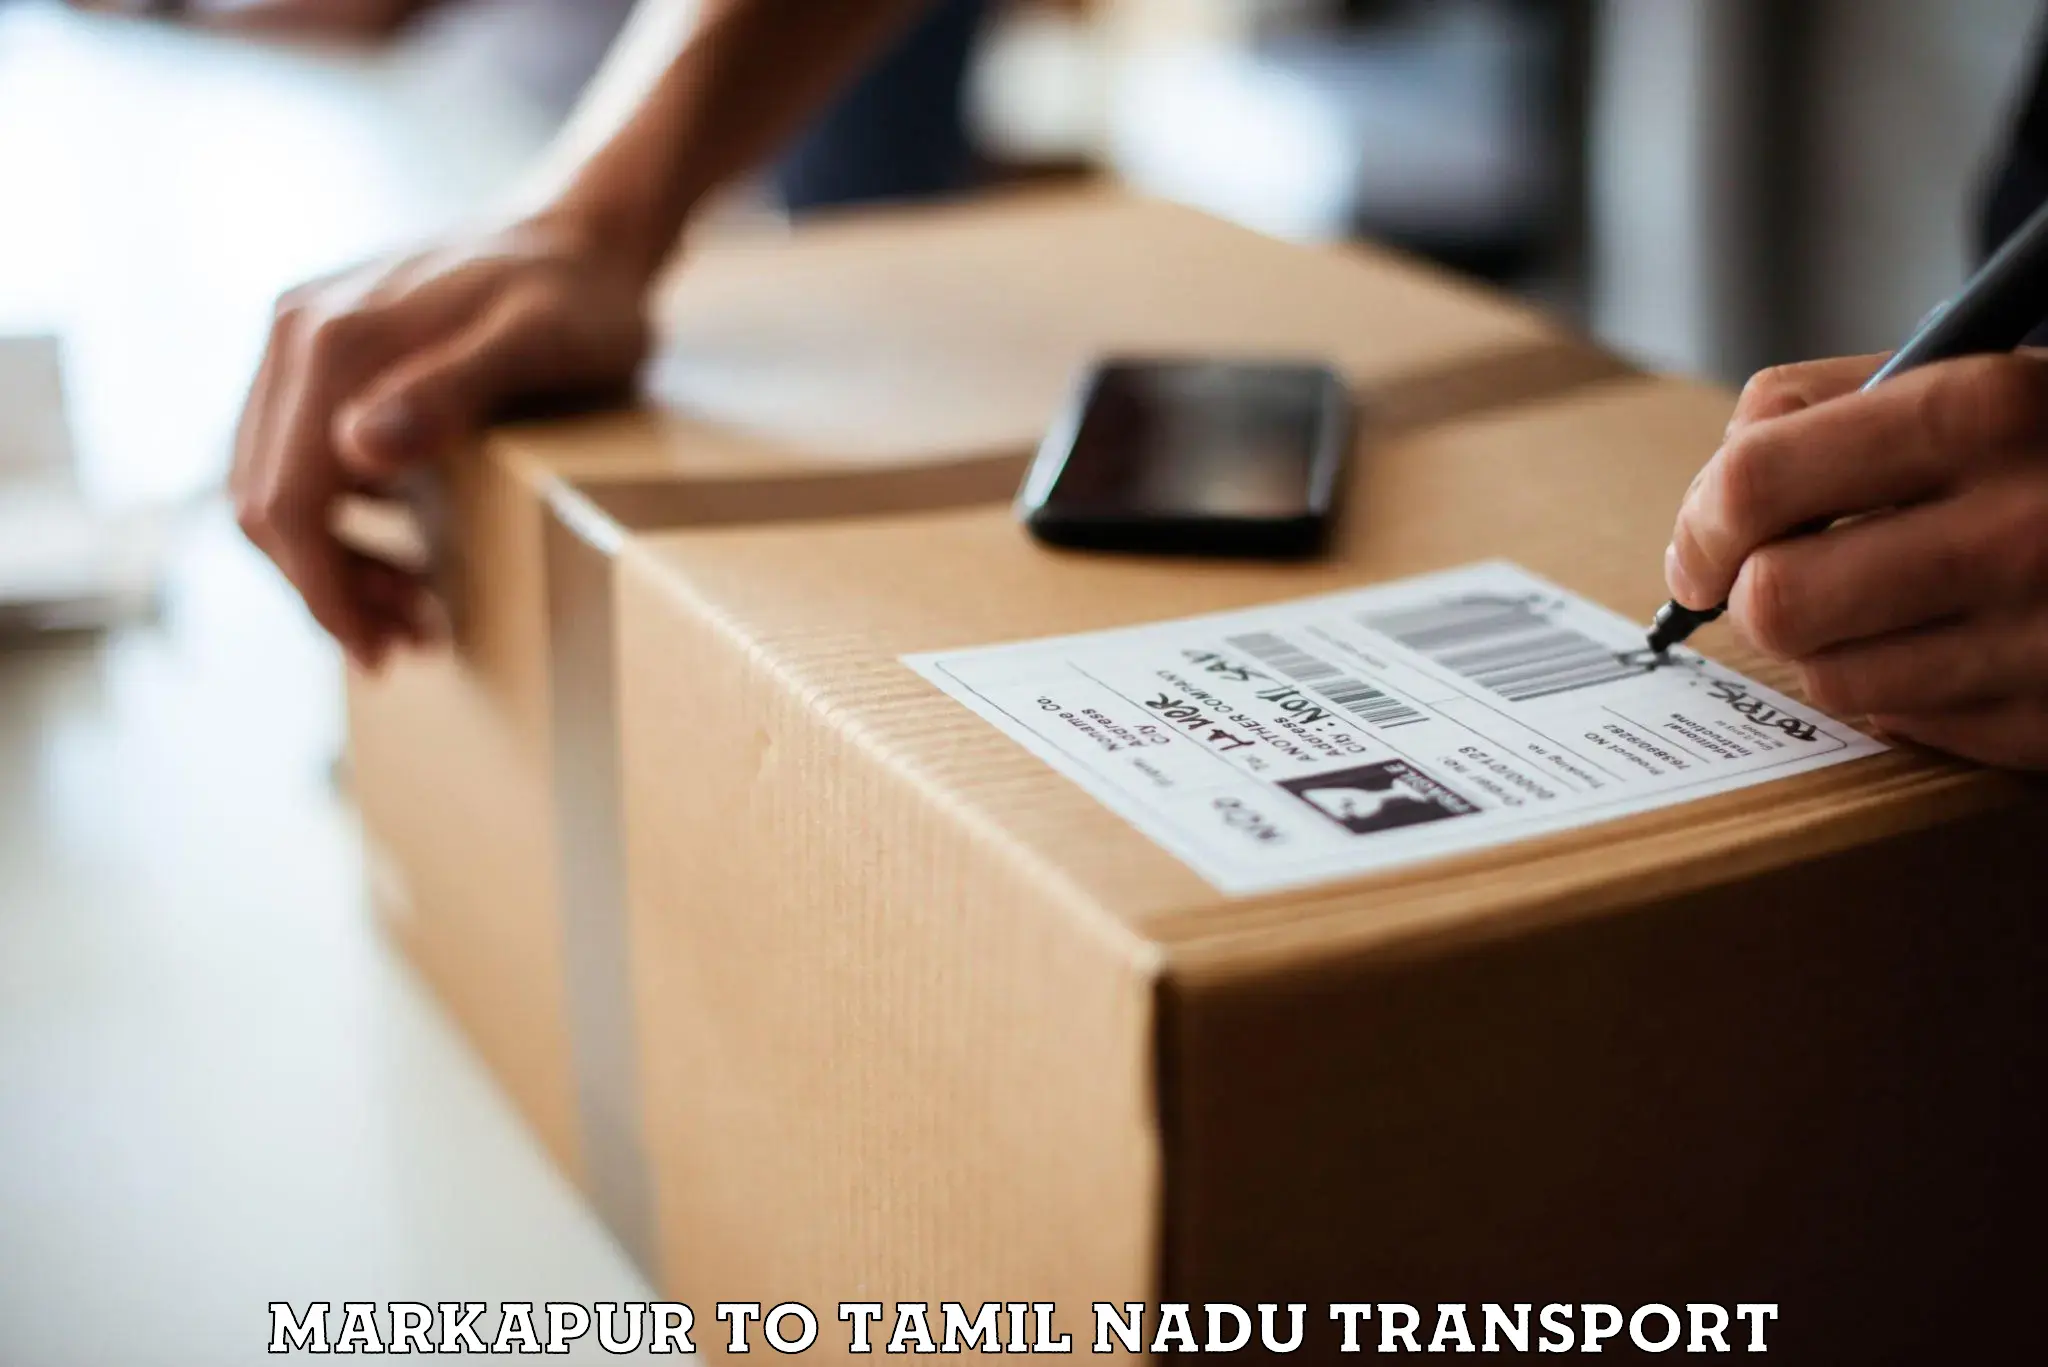 Truck transport companies in India Markapur to Neyveli